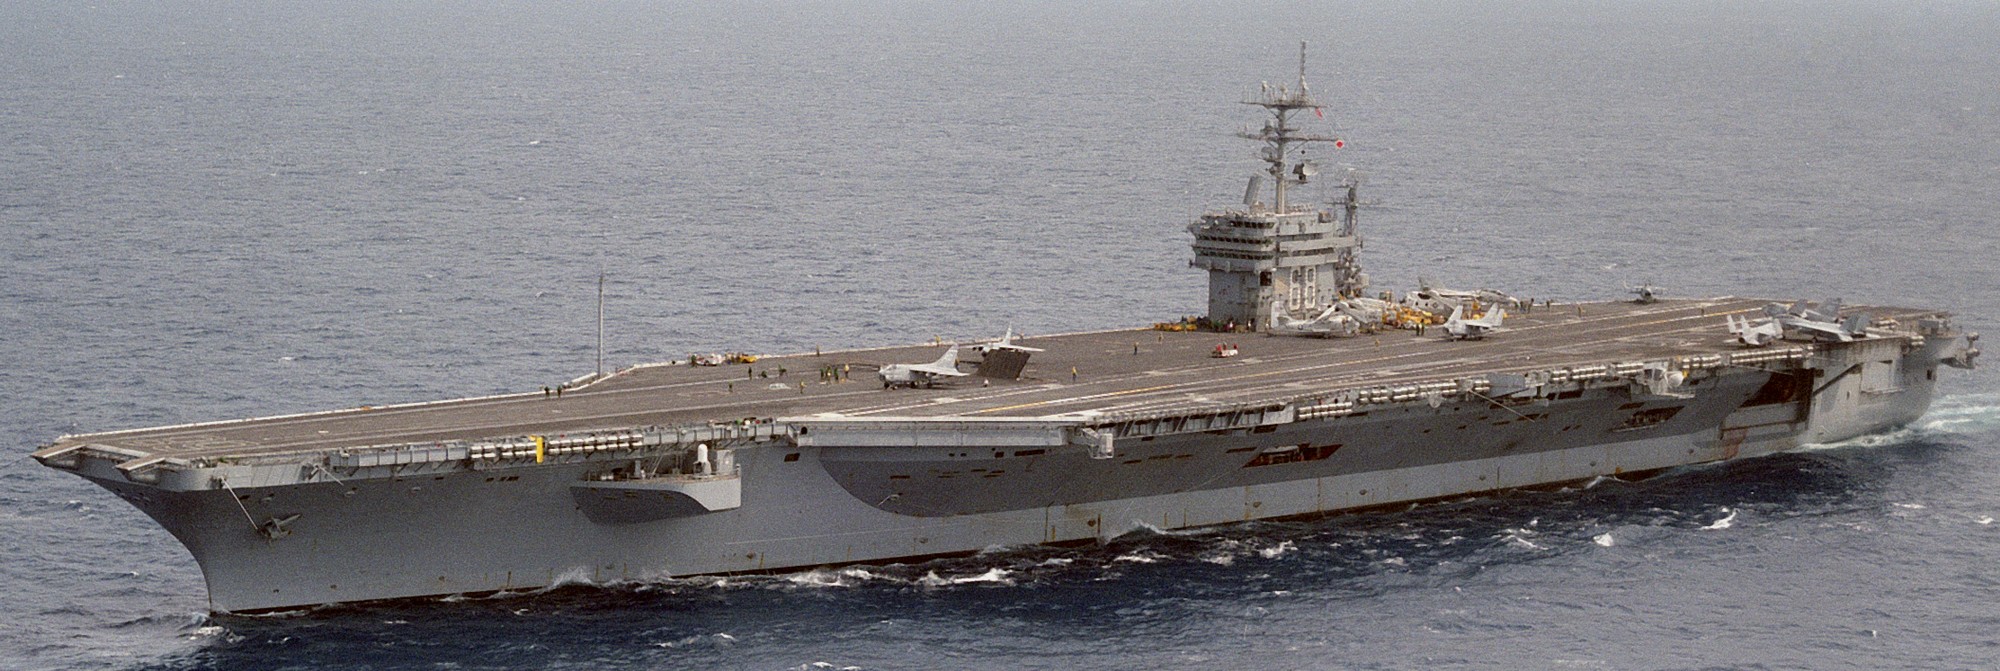 cvn-68 uss nimitz aircraft carrier us navy 41